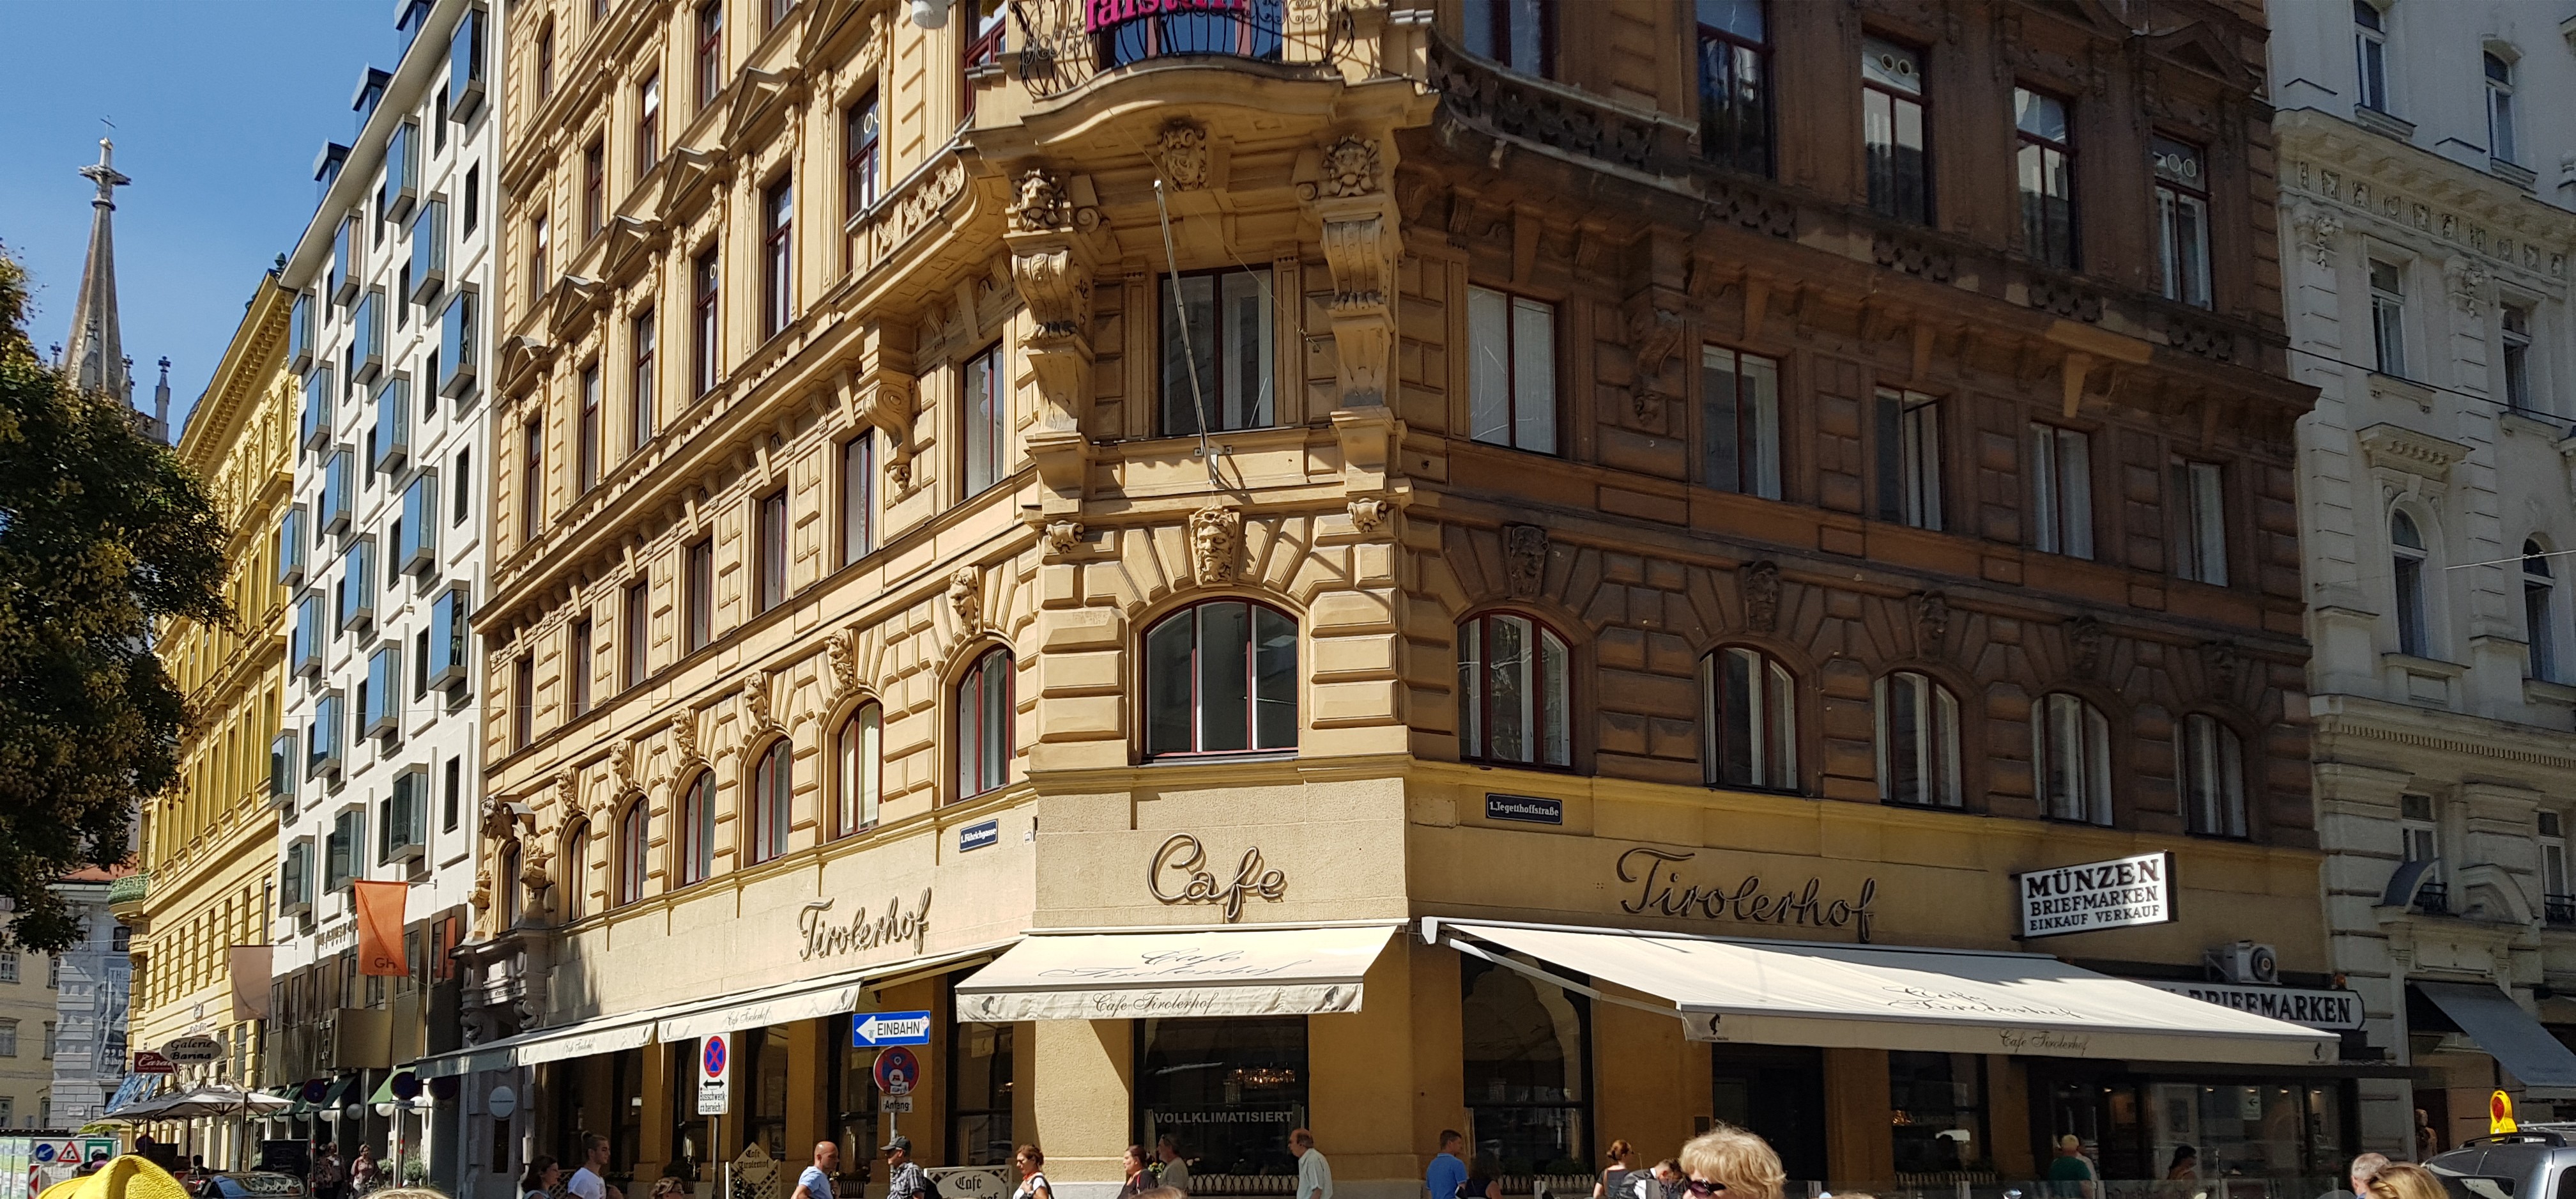 Cafe Tirolerhof, Vienna: All Year